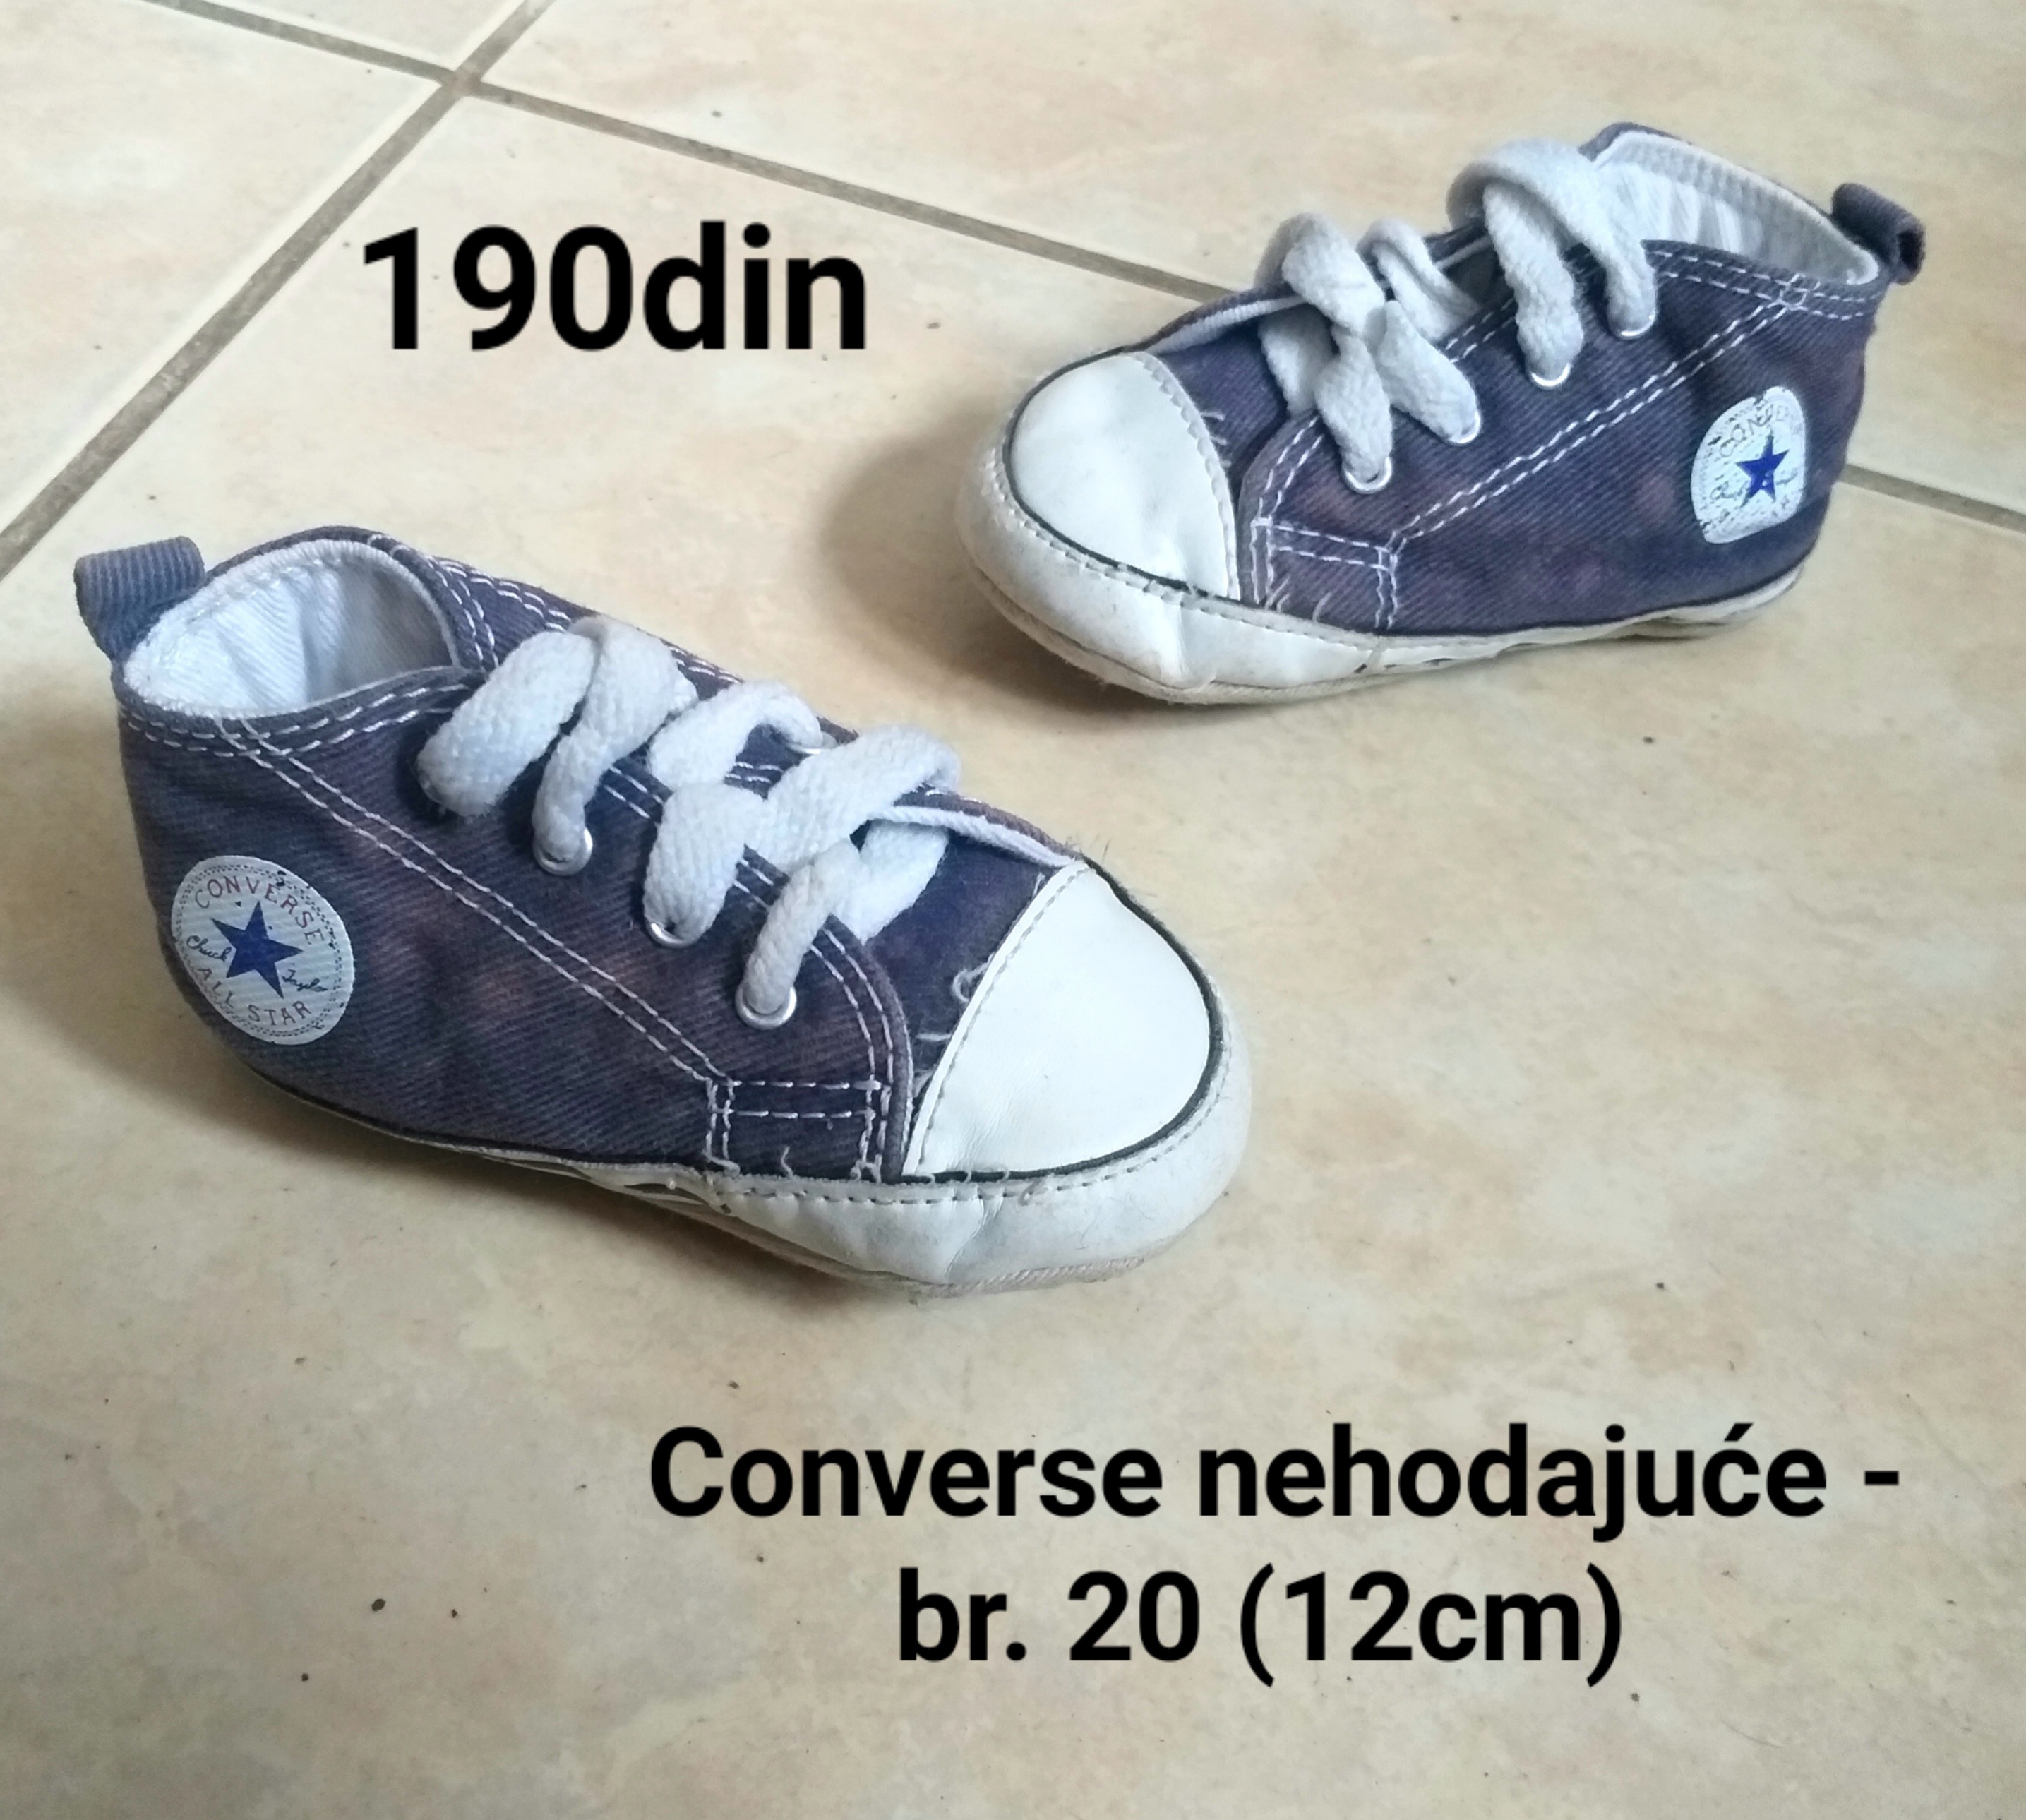 Converse starke nehodajuće patike za bebe plave br. 20 - Kupindo.com  (75120081)